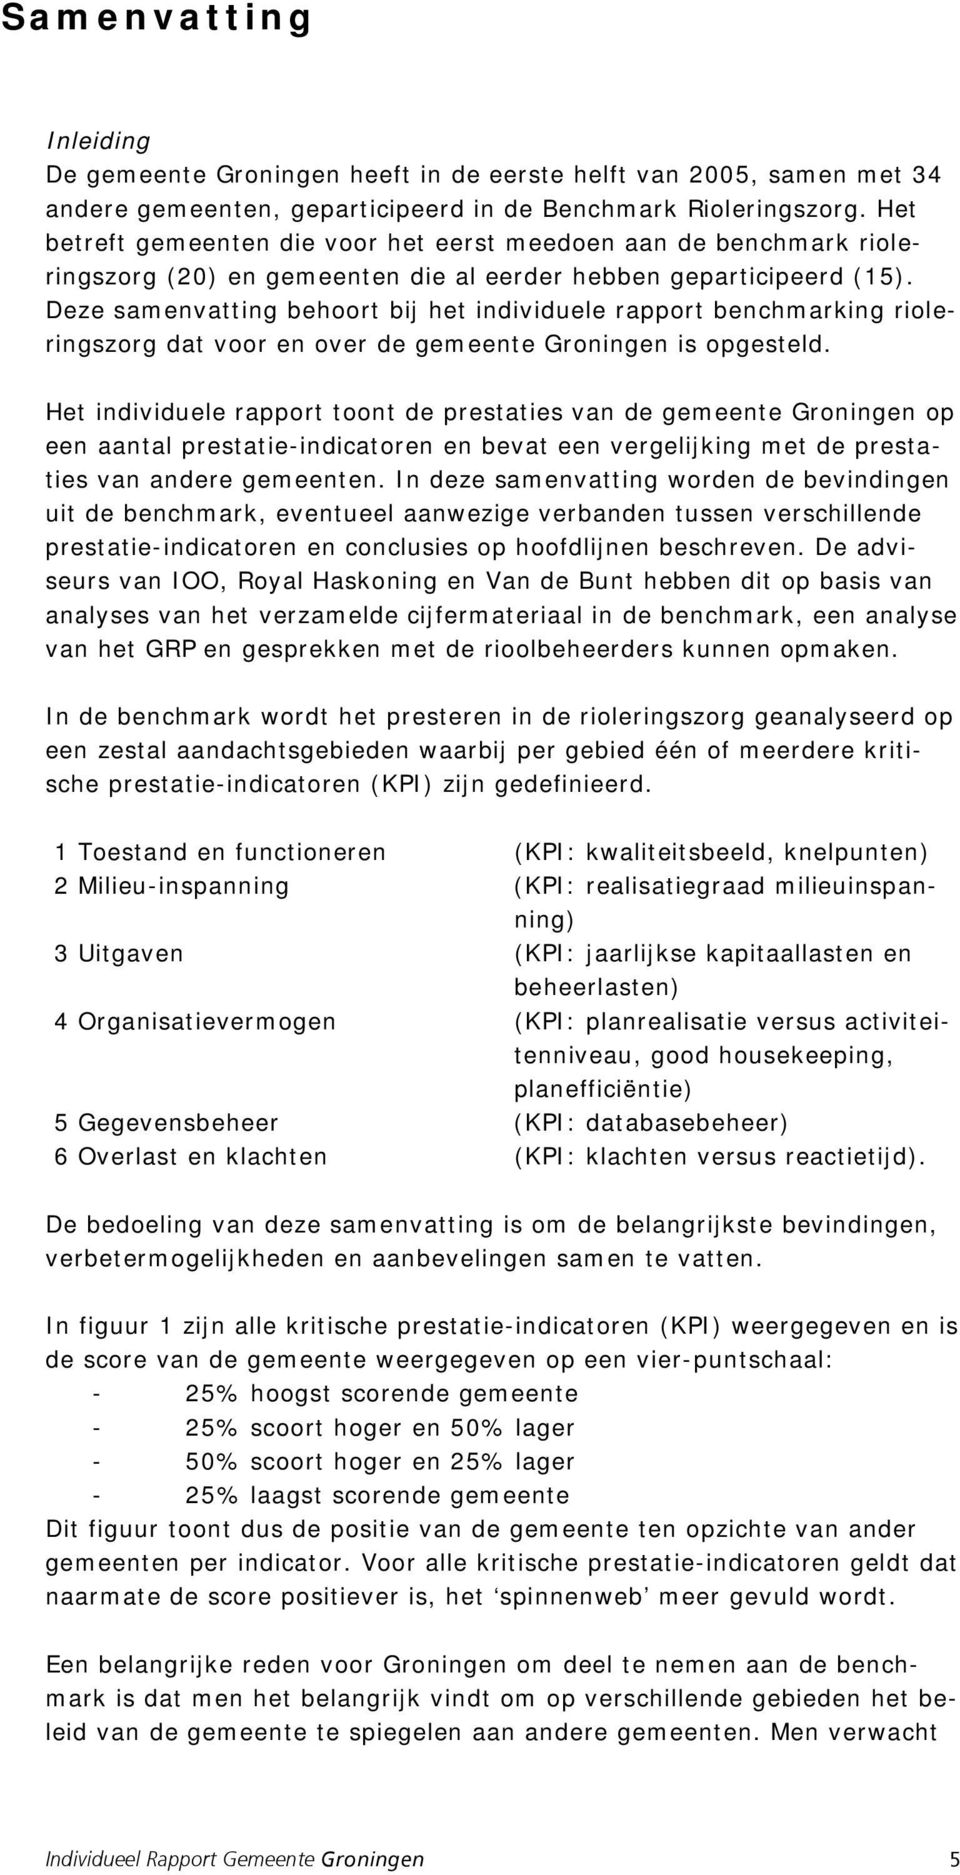 Deze samenvatting behoort bij het individuele rapport benchmarking rioleringszorg dat voor en over de gemeente Groningen is opgesteld.